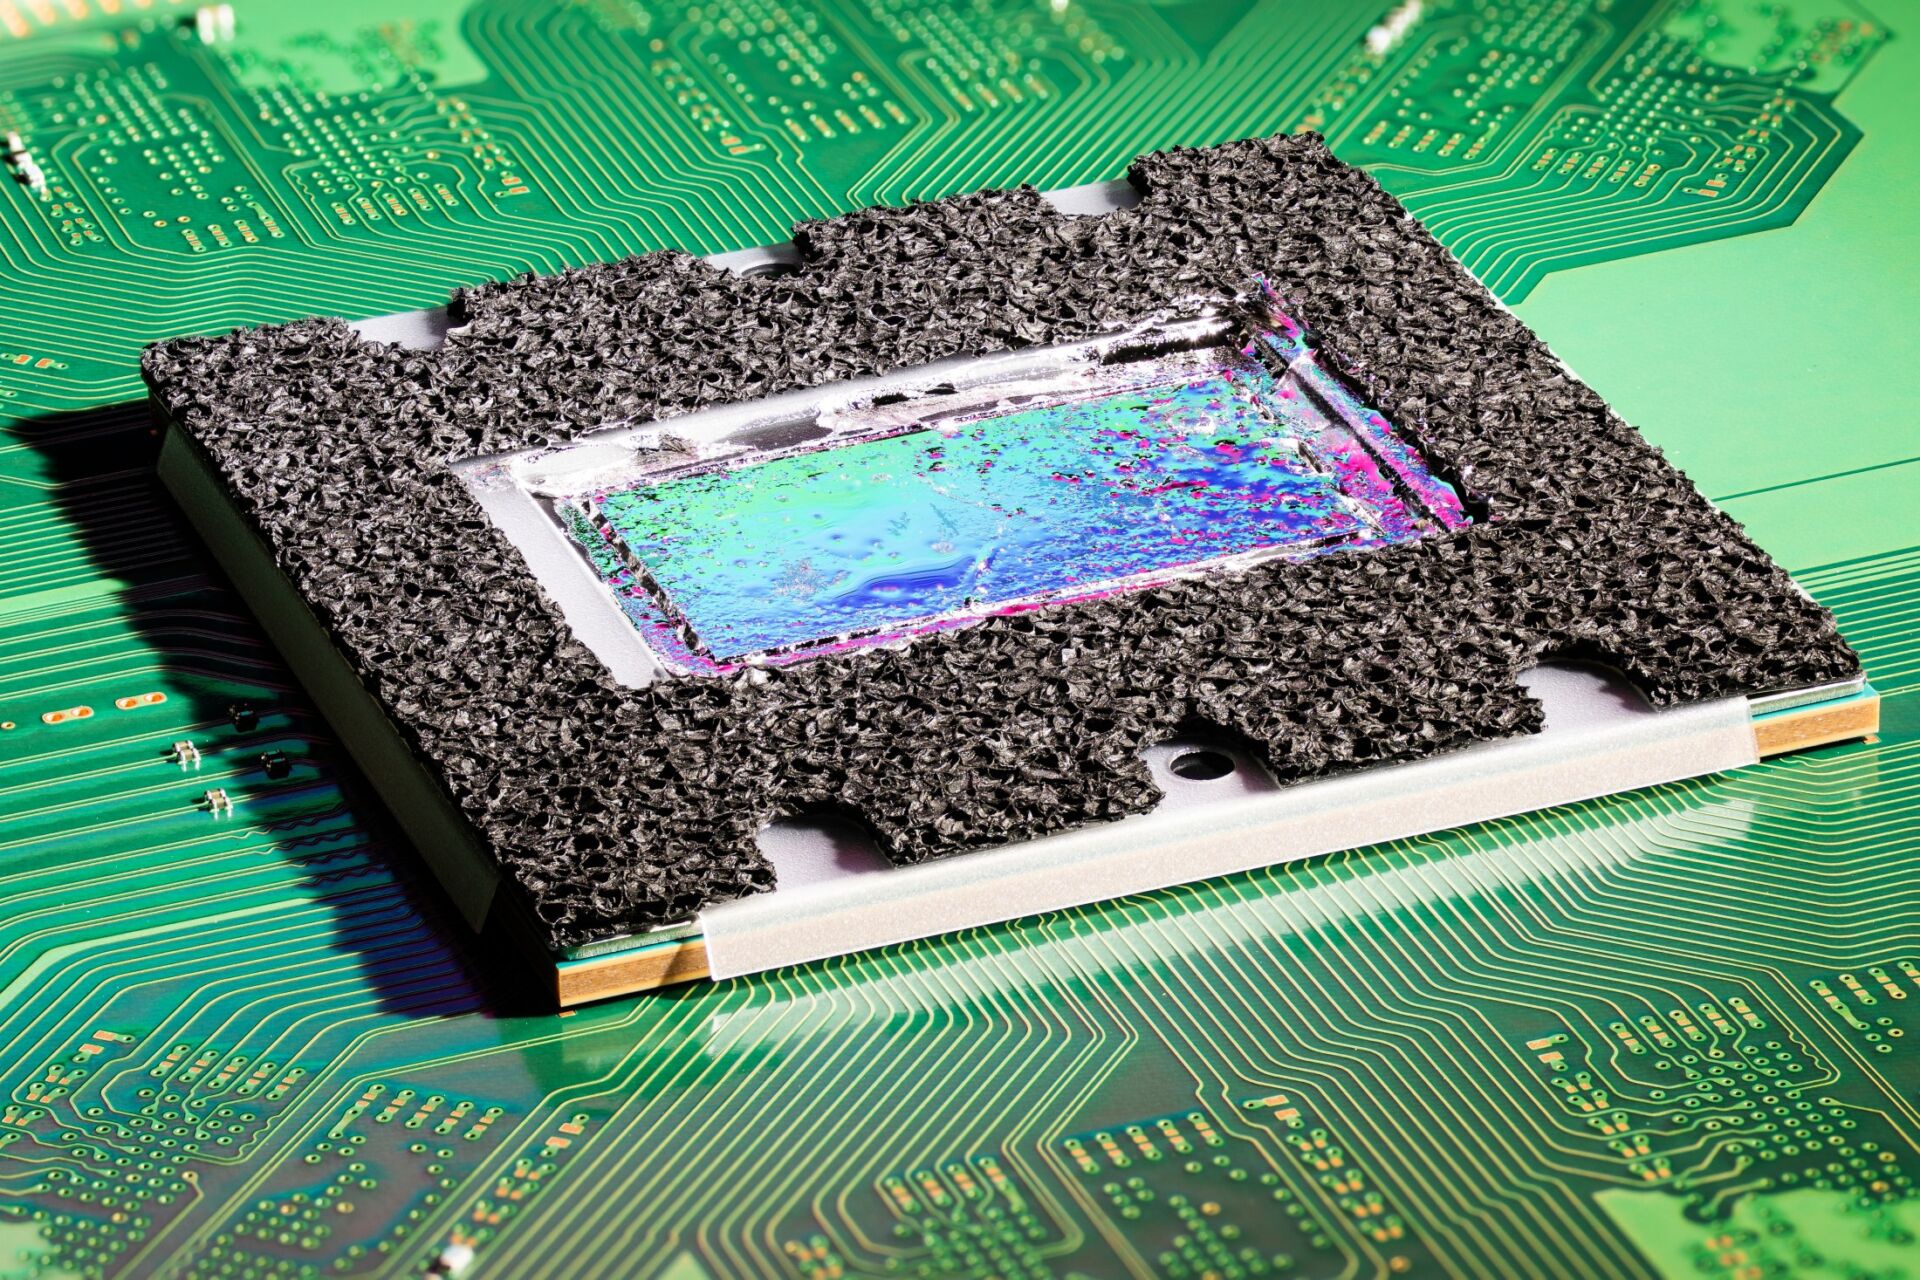 Processador da Sony PS5 visto ao microscópio revela limitações